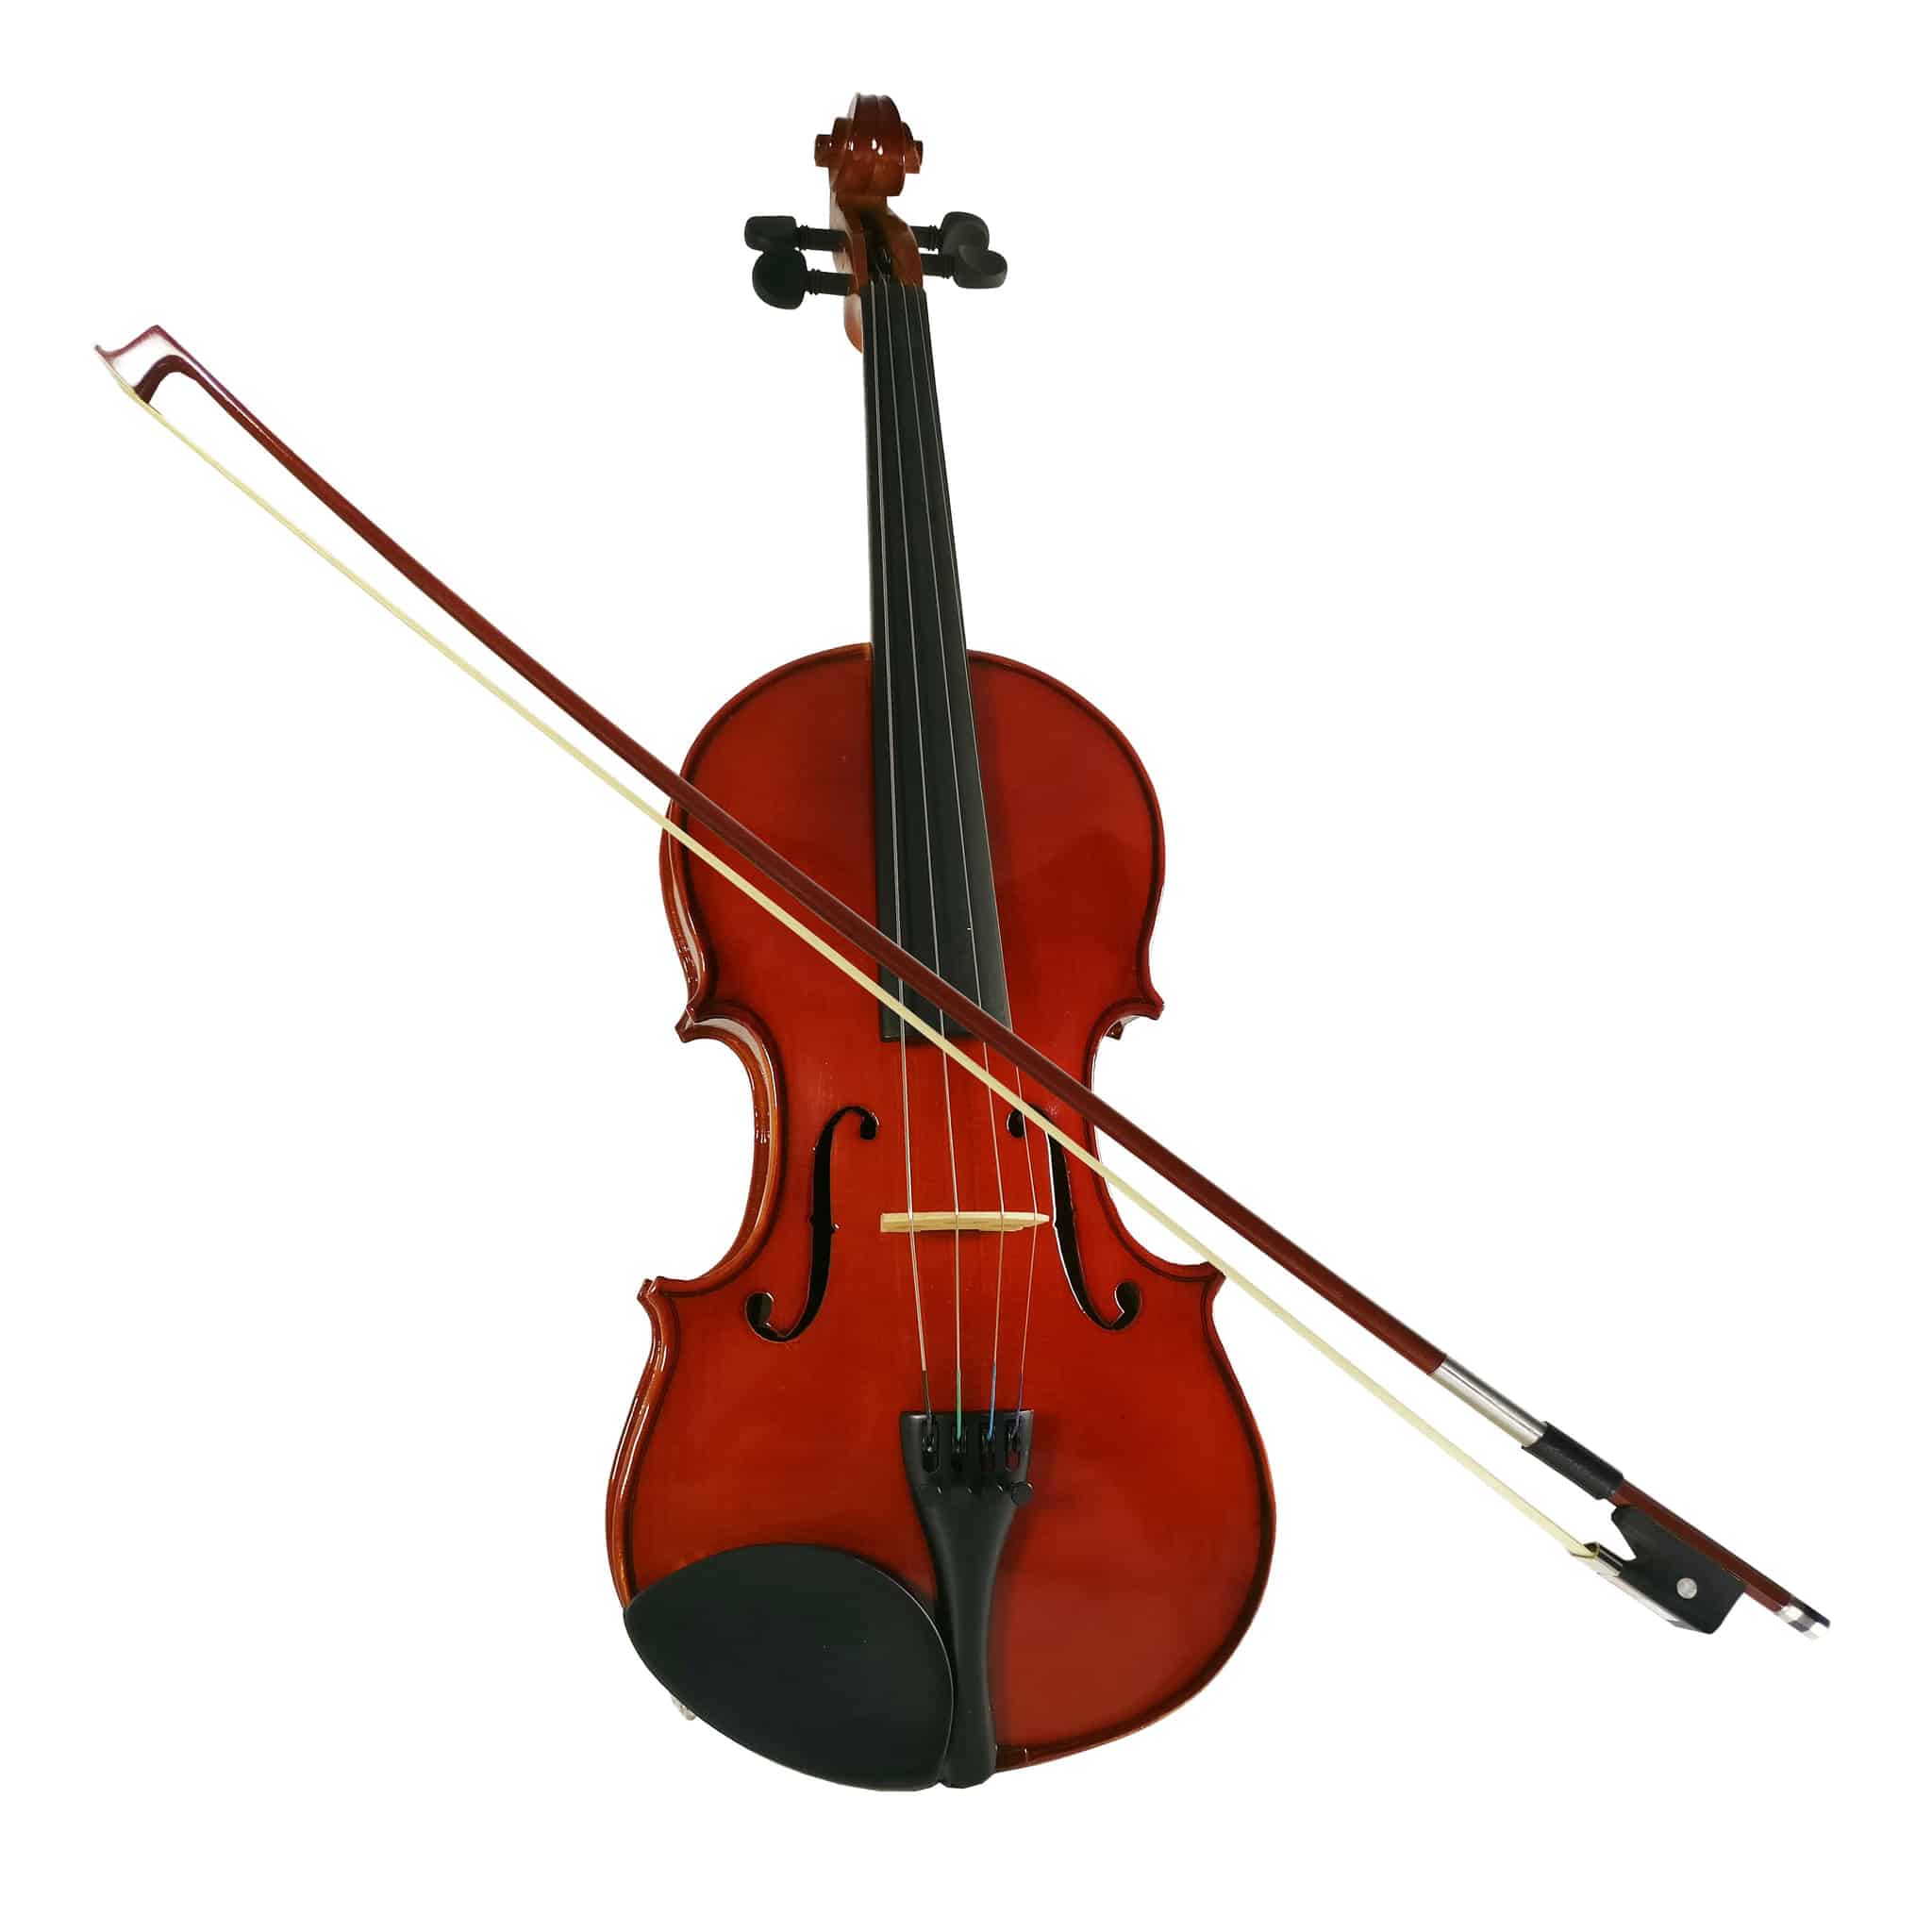 Berikut yang bukan alat musik yang digunakan dalam sajian musik ansambel adalah alat musik